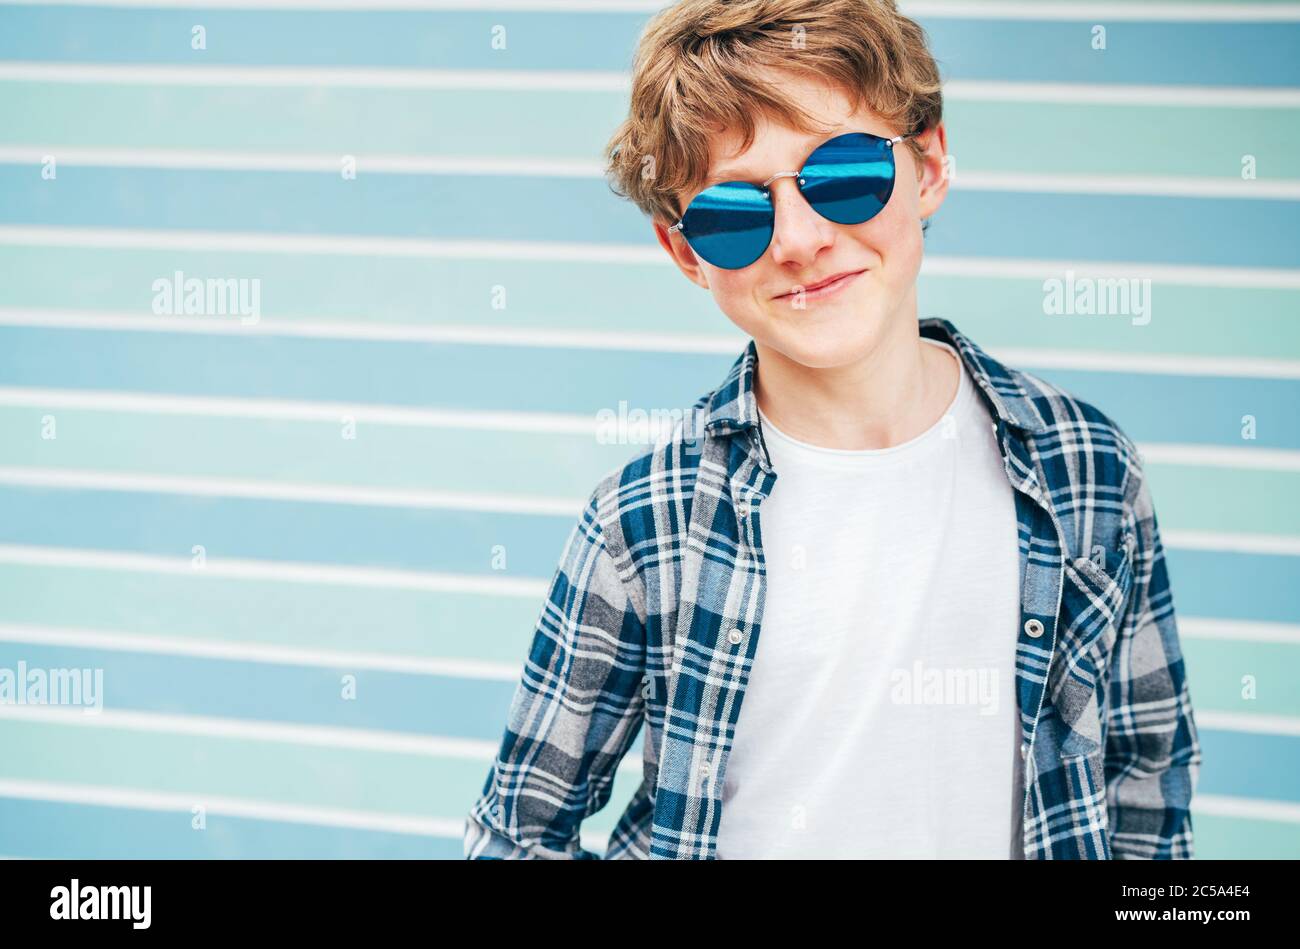 Blonde Haare 12 Jahre alten kaukasischen Teenager junge Mode-Portrait gekleidet weißen T-Shirt mit karierten Hemd in blauer Sonnenbrille mit türkisblauen Rücken Stockfoto